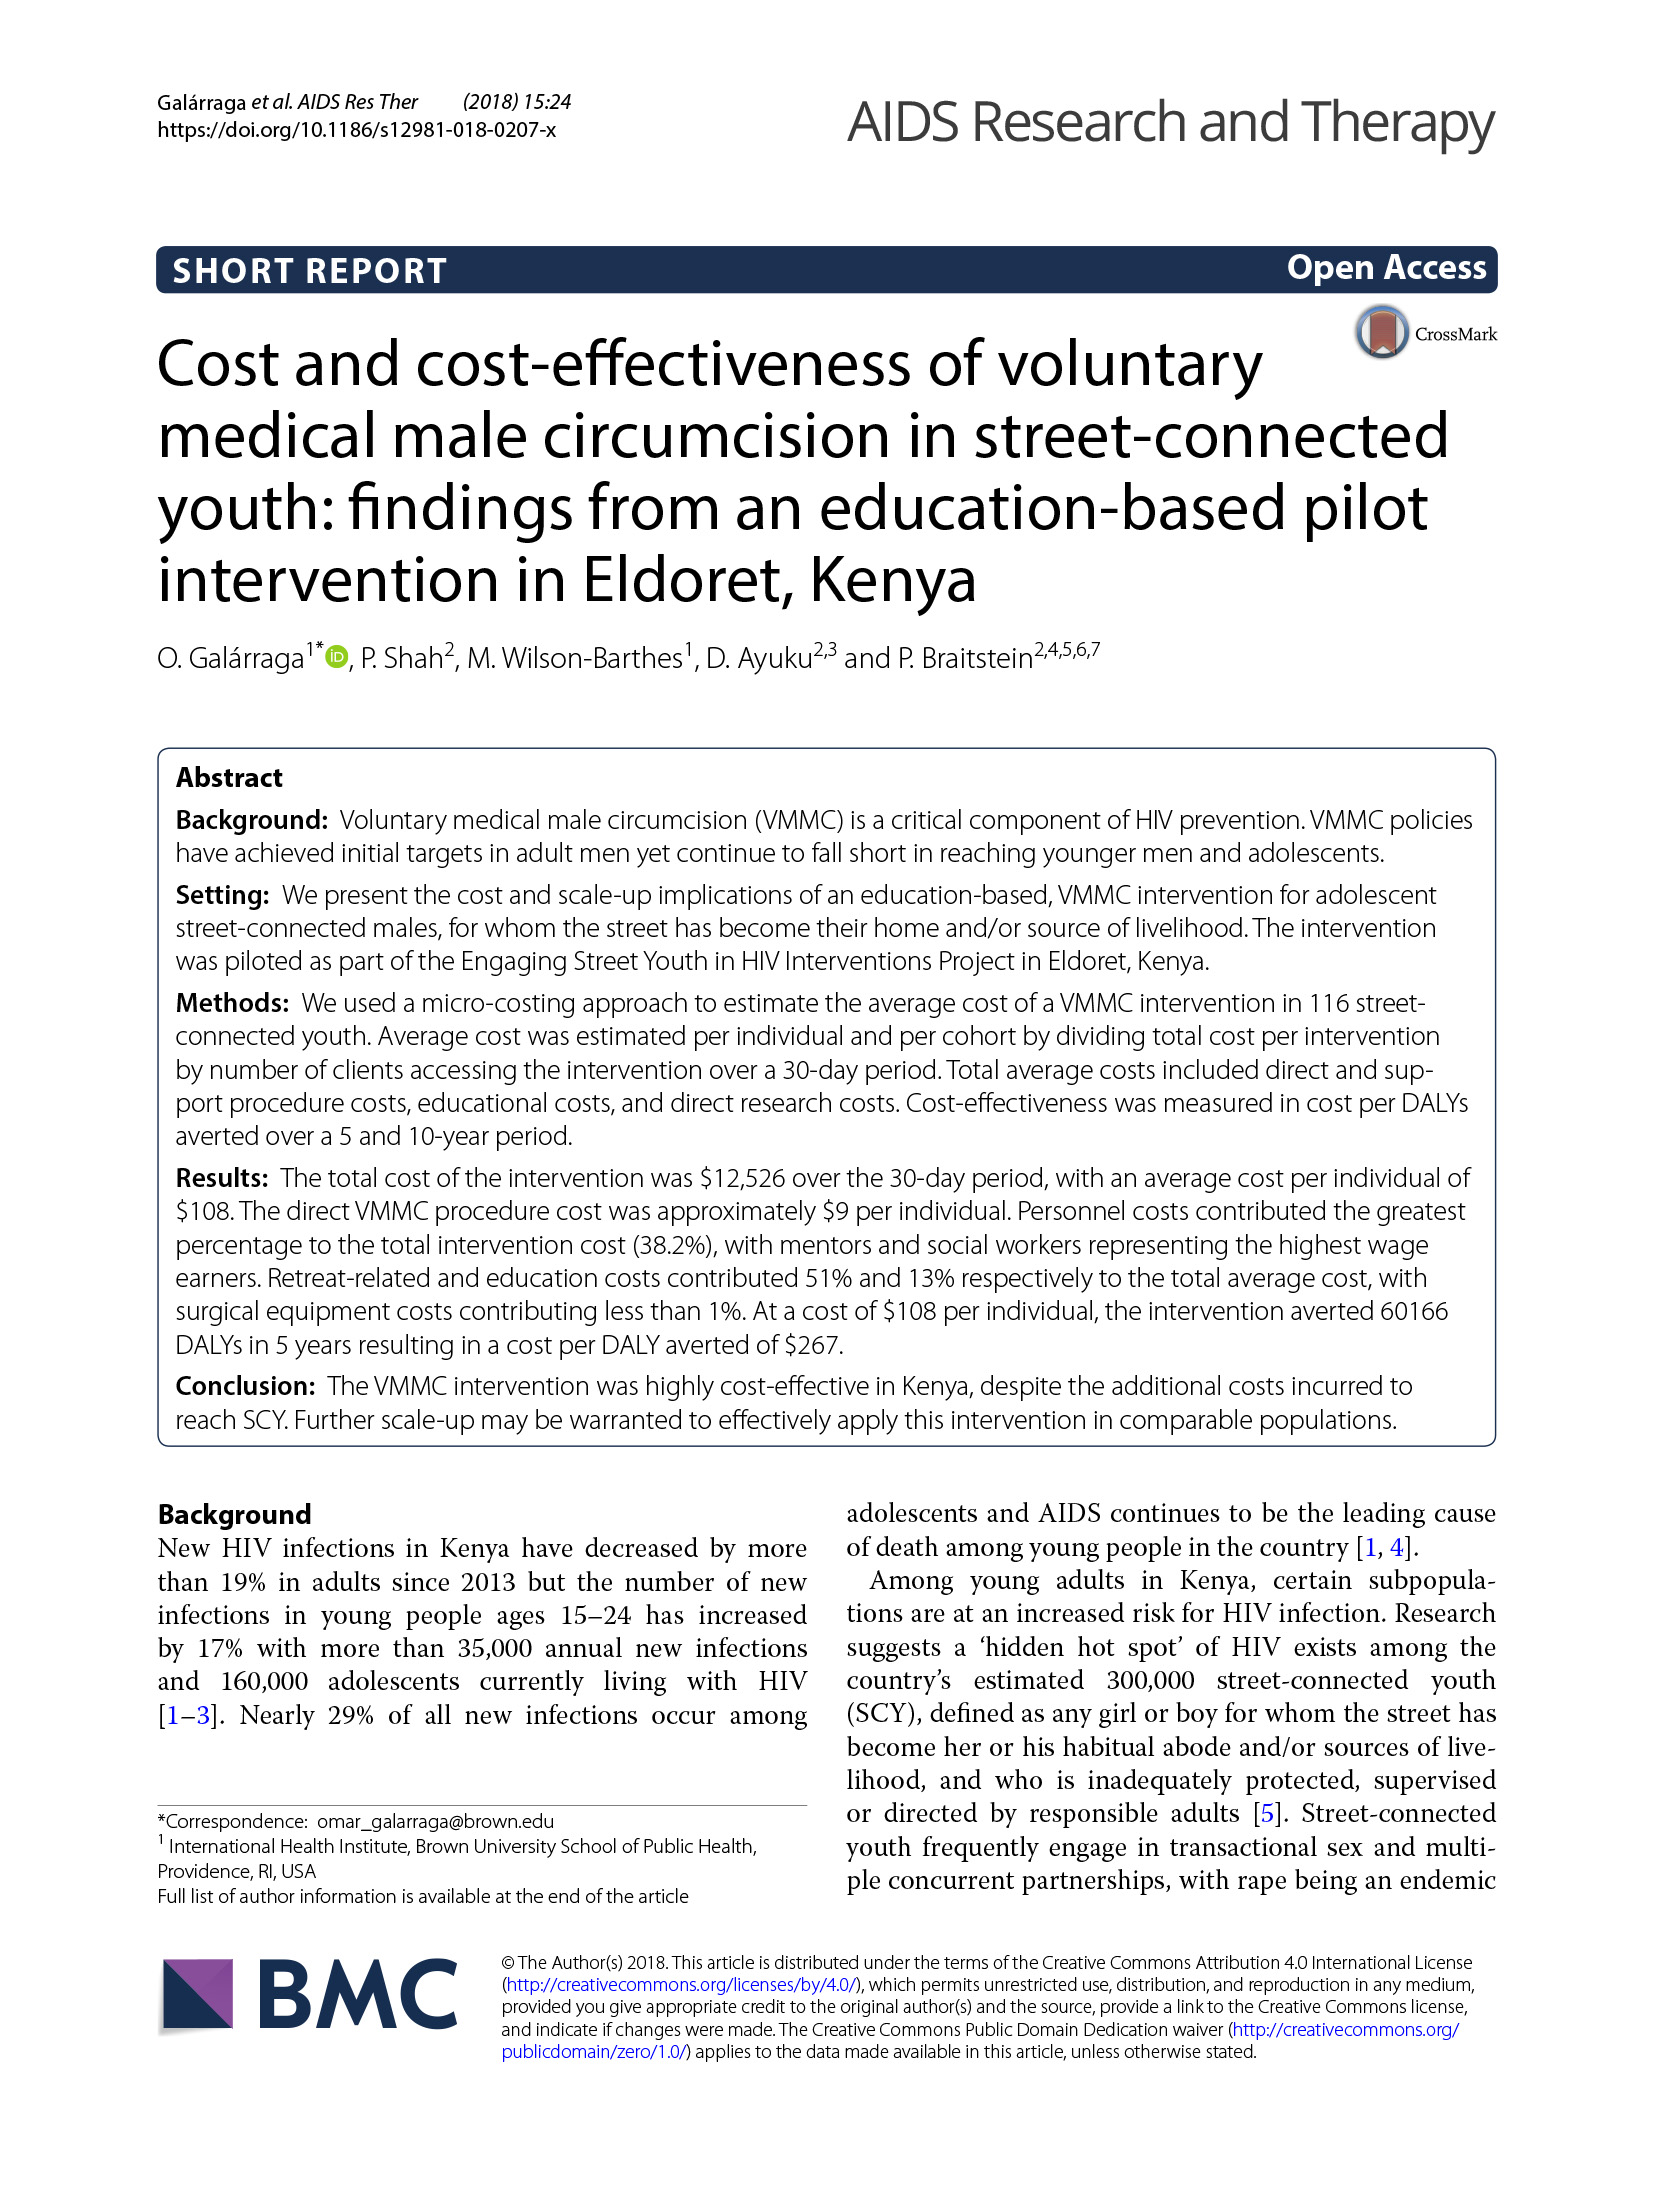 Custo e custo-eficácia da circuncisão médica masculina voluntária em jovens ligados à rua - Conclusões de uma intervenção-piloto baseada na educação em Eldoret, Quénia - capa